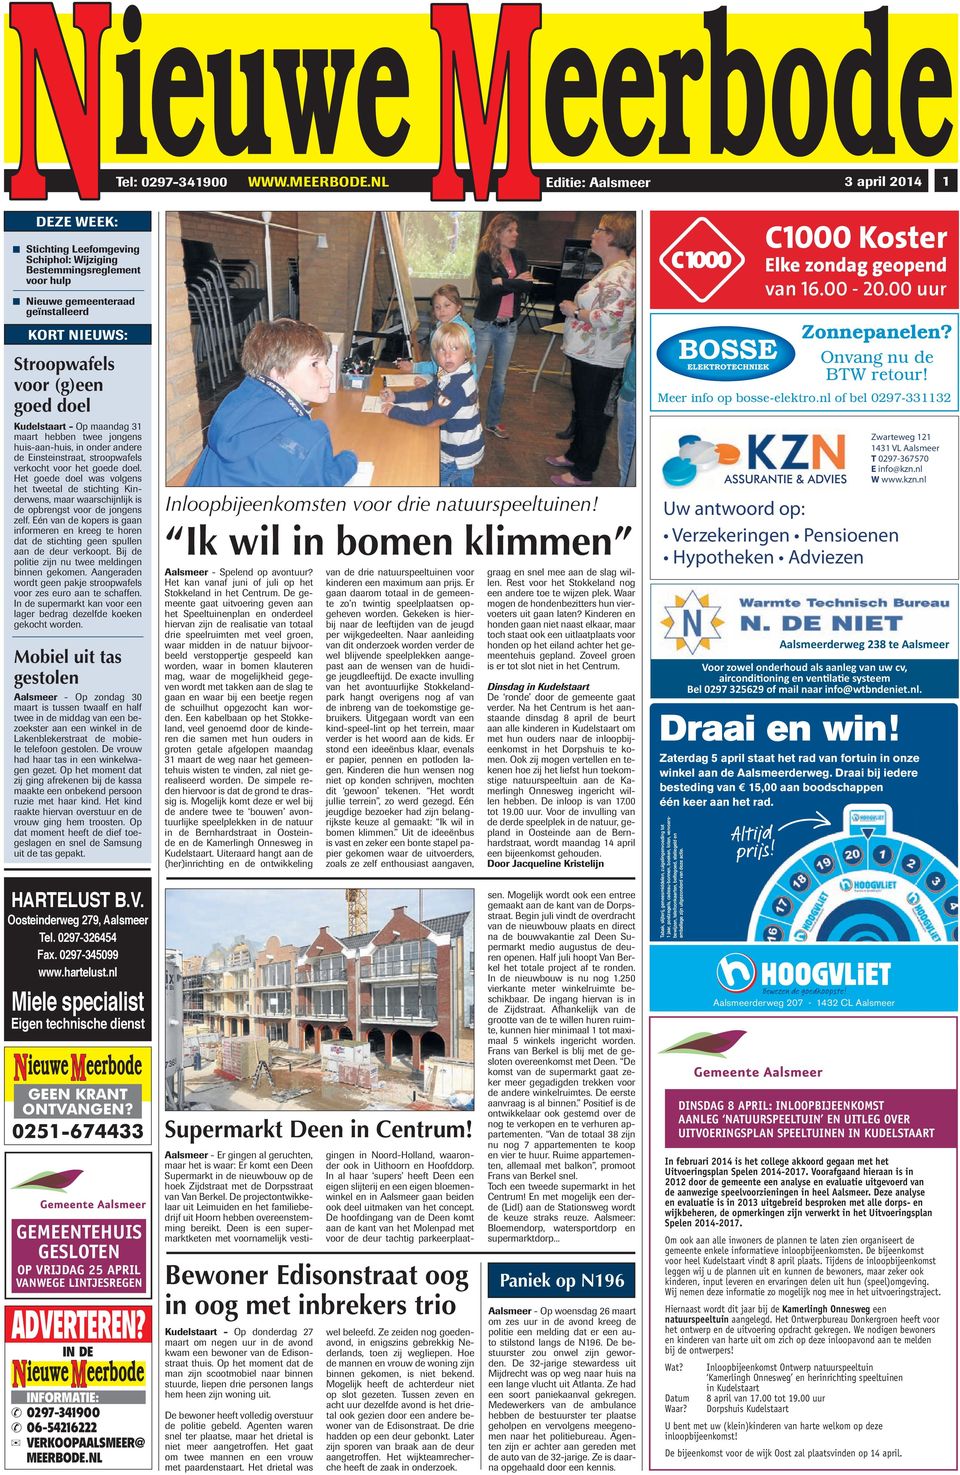 doel Kudelstaart - Op maandag 31 maart hebben twee jongens huis-aan-huis, in onder andere de Einsteinstraat, stroopwafels verkocht voor het goede doel.